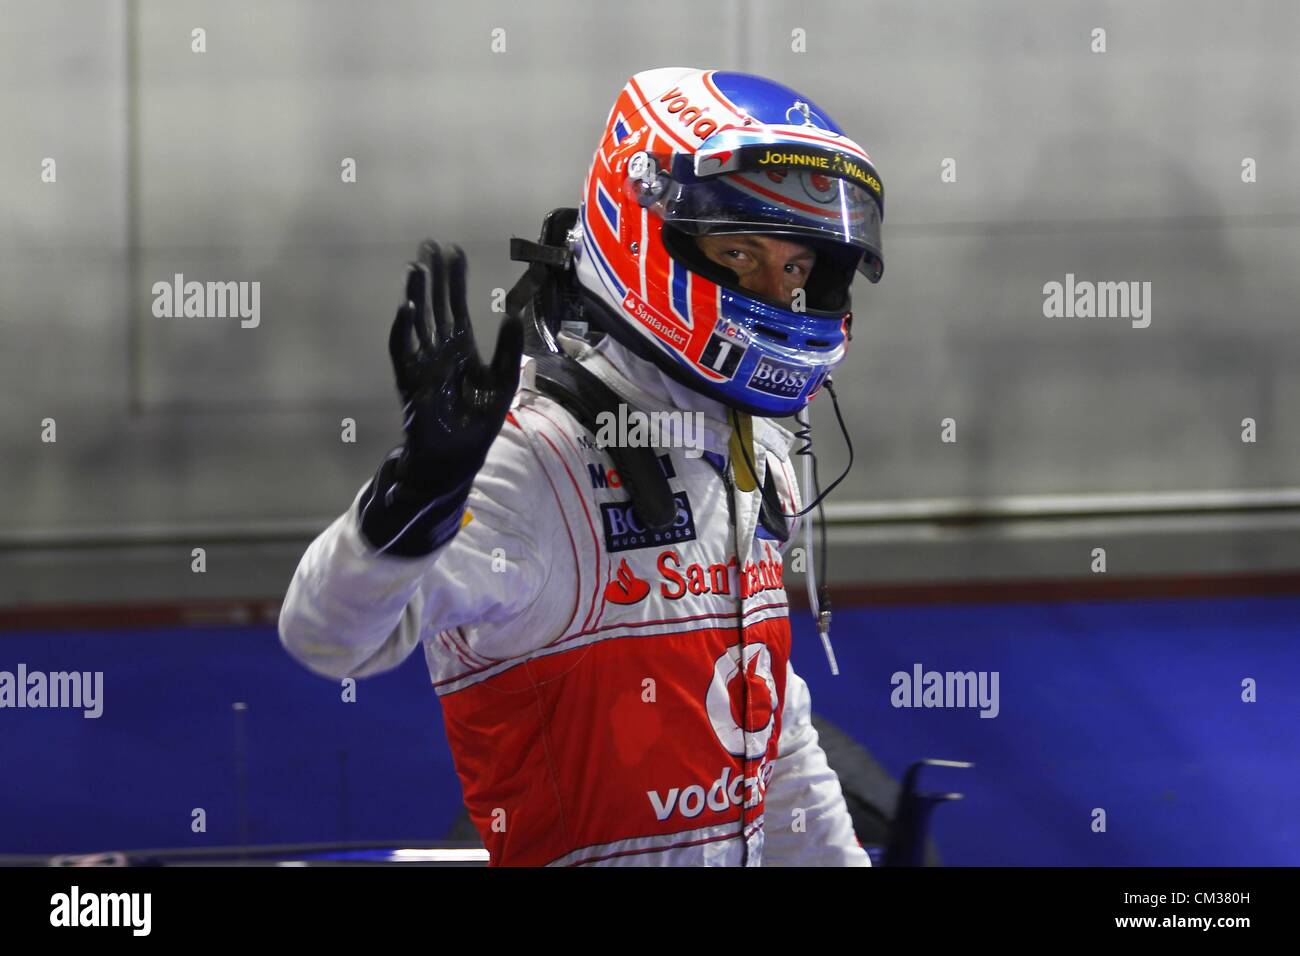 23.09.2012. FIA Formula One World Championship 2012 Grand Prix di Singapore 3 Jenson Button GBR Vodafone McLaren Mercedes torna a casa in secondo luogo Foto Stock